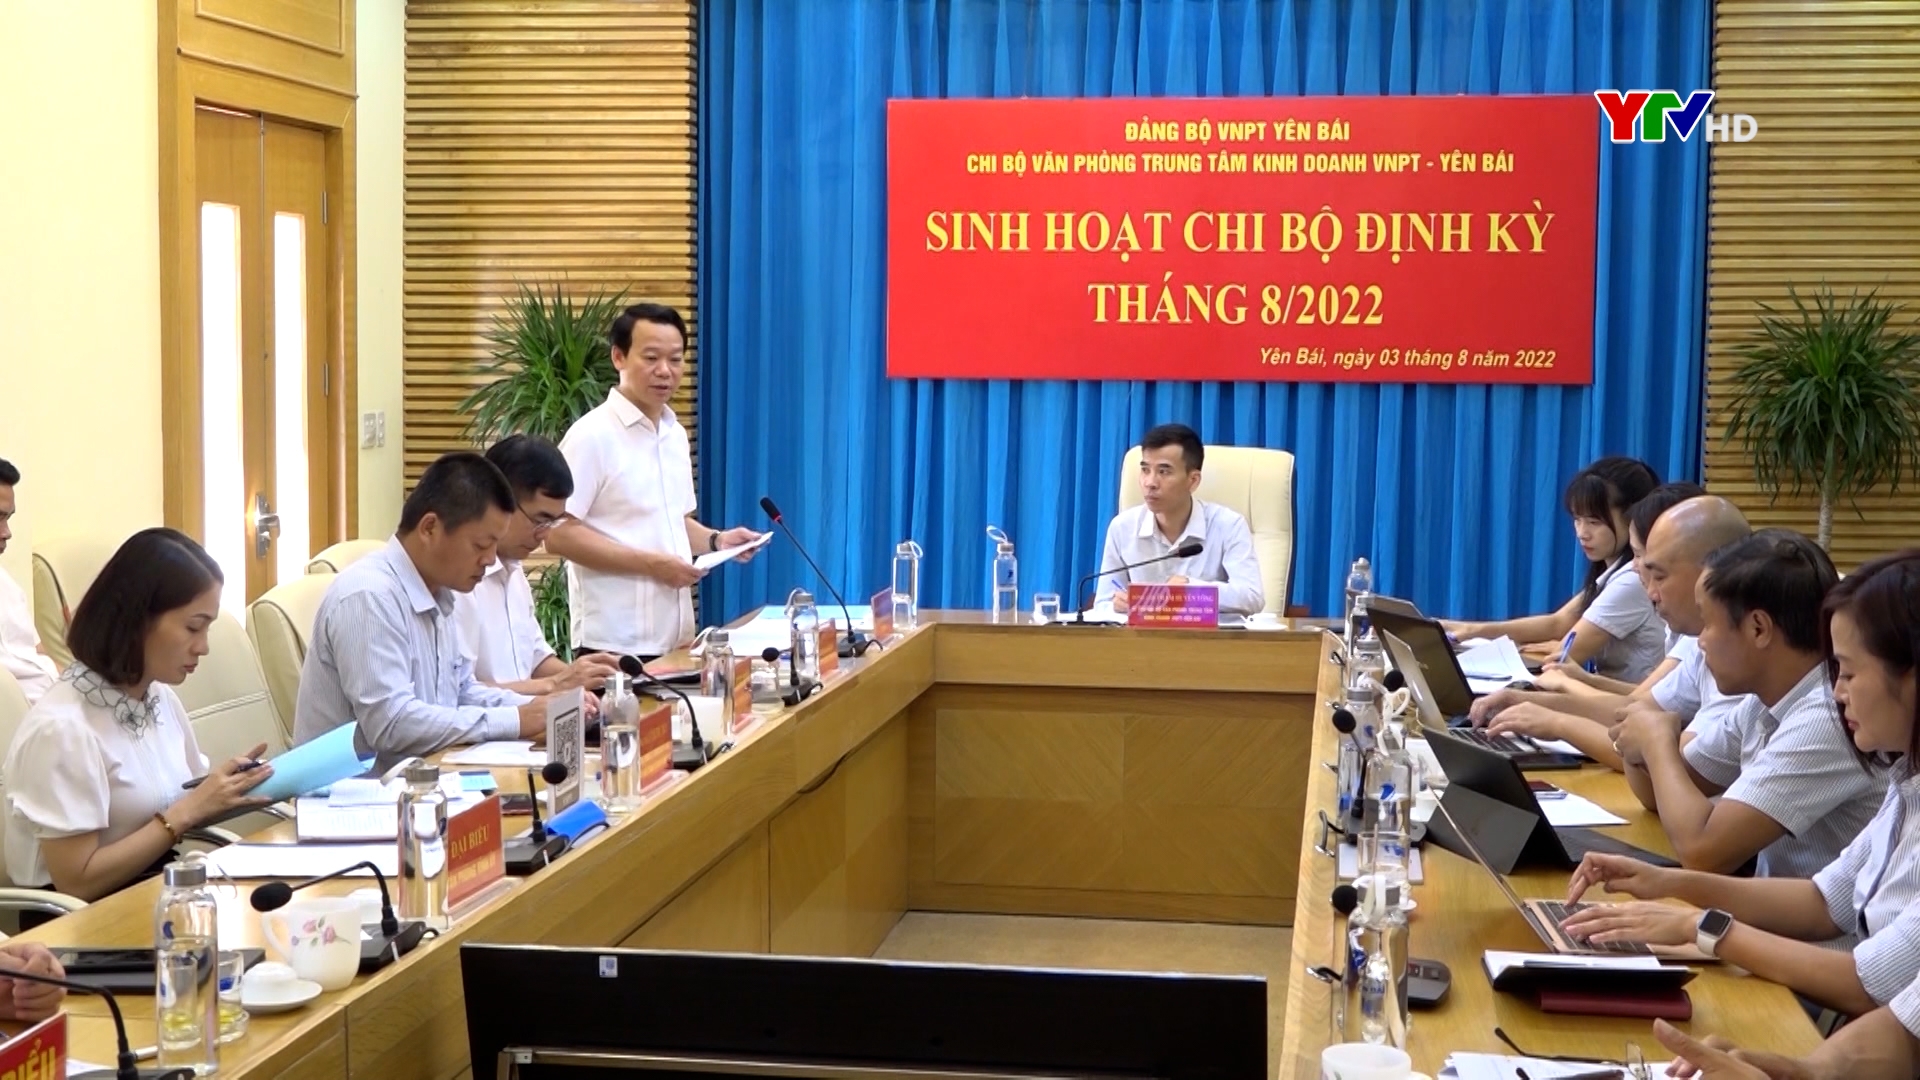 Đồng chí Bí thư Tỉnh ủy dự sinh hoạt Chi bộ Văn phòng Trung tâm kinh doanh VNPT Yên Bái